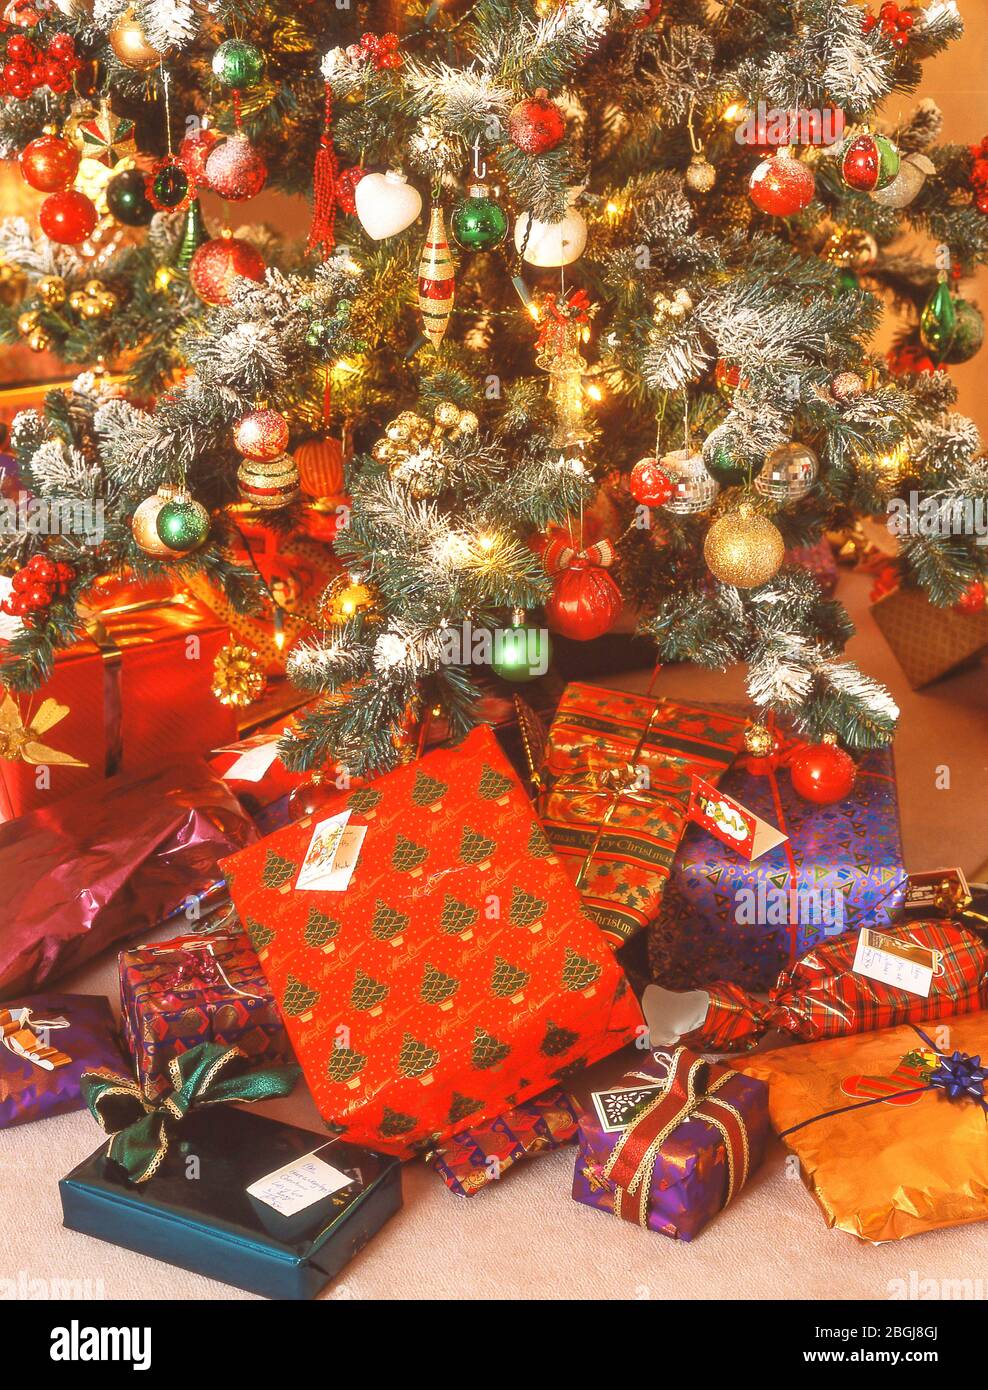 Regalos de Navidad debajo del árbol de Navidad, Ascot, Berkshire, Reino Unido Foto de stock